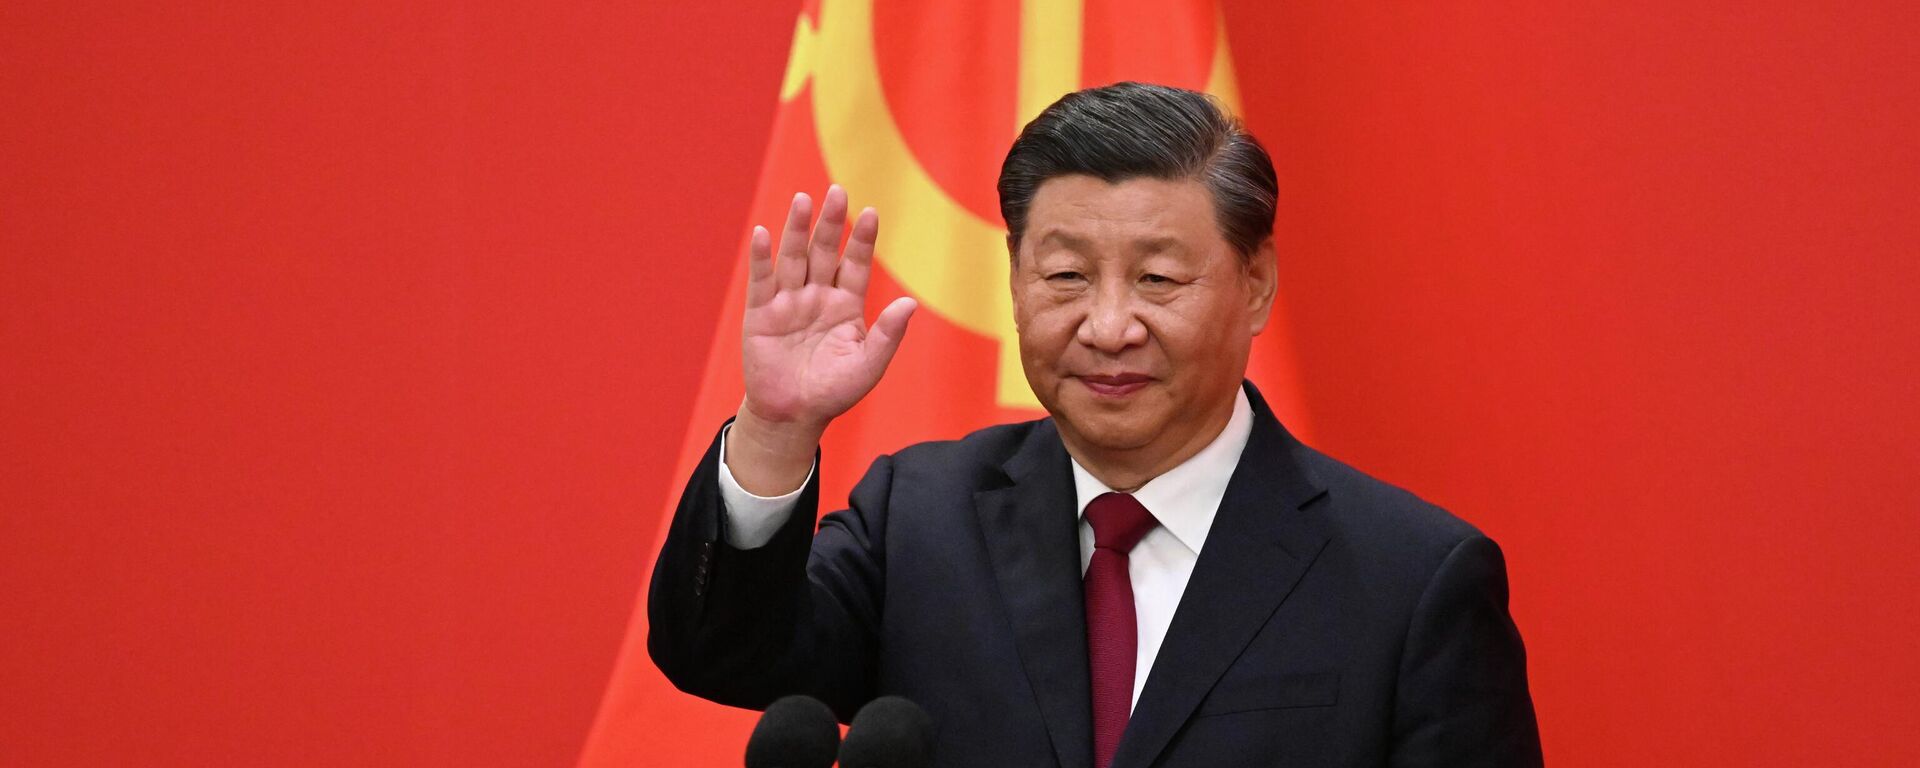 Xi Jinping, el mandatario chino, en el XX Congreso Nacional del Partido Comunista de China en el Gran Salón del Pueblo - Sputnik Mundo, 1920, 04.11.2022